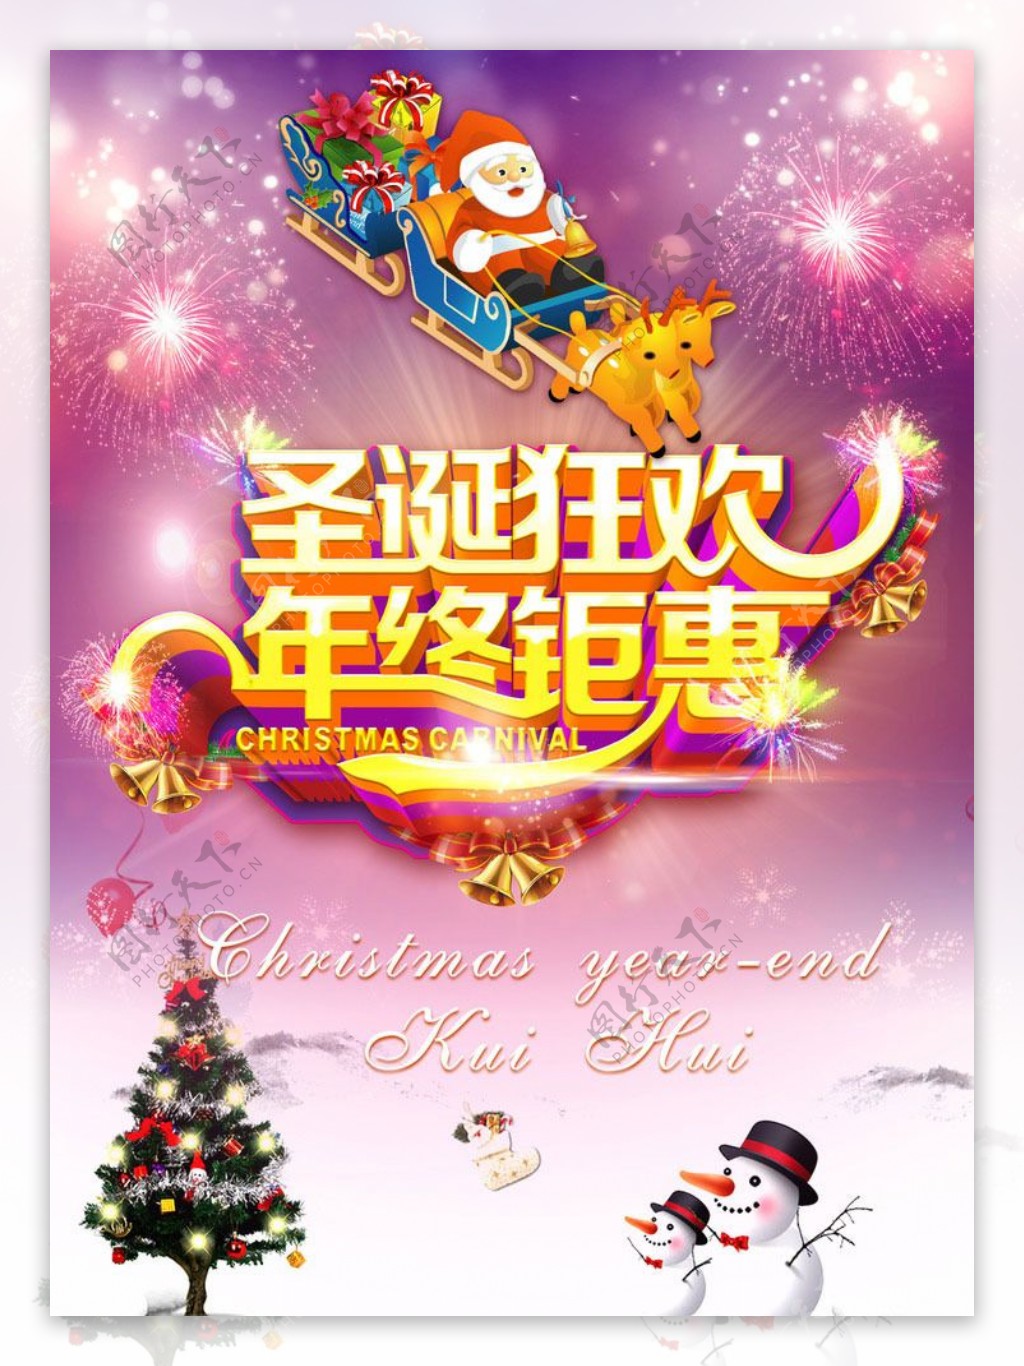 圣诞狂欢年终钜惠活动海报设计PSD素材